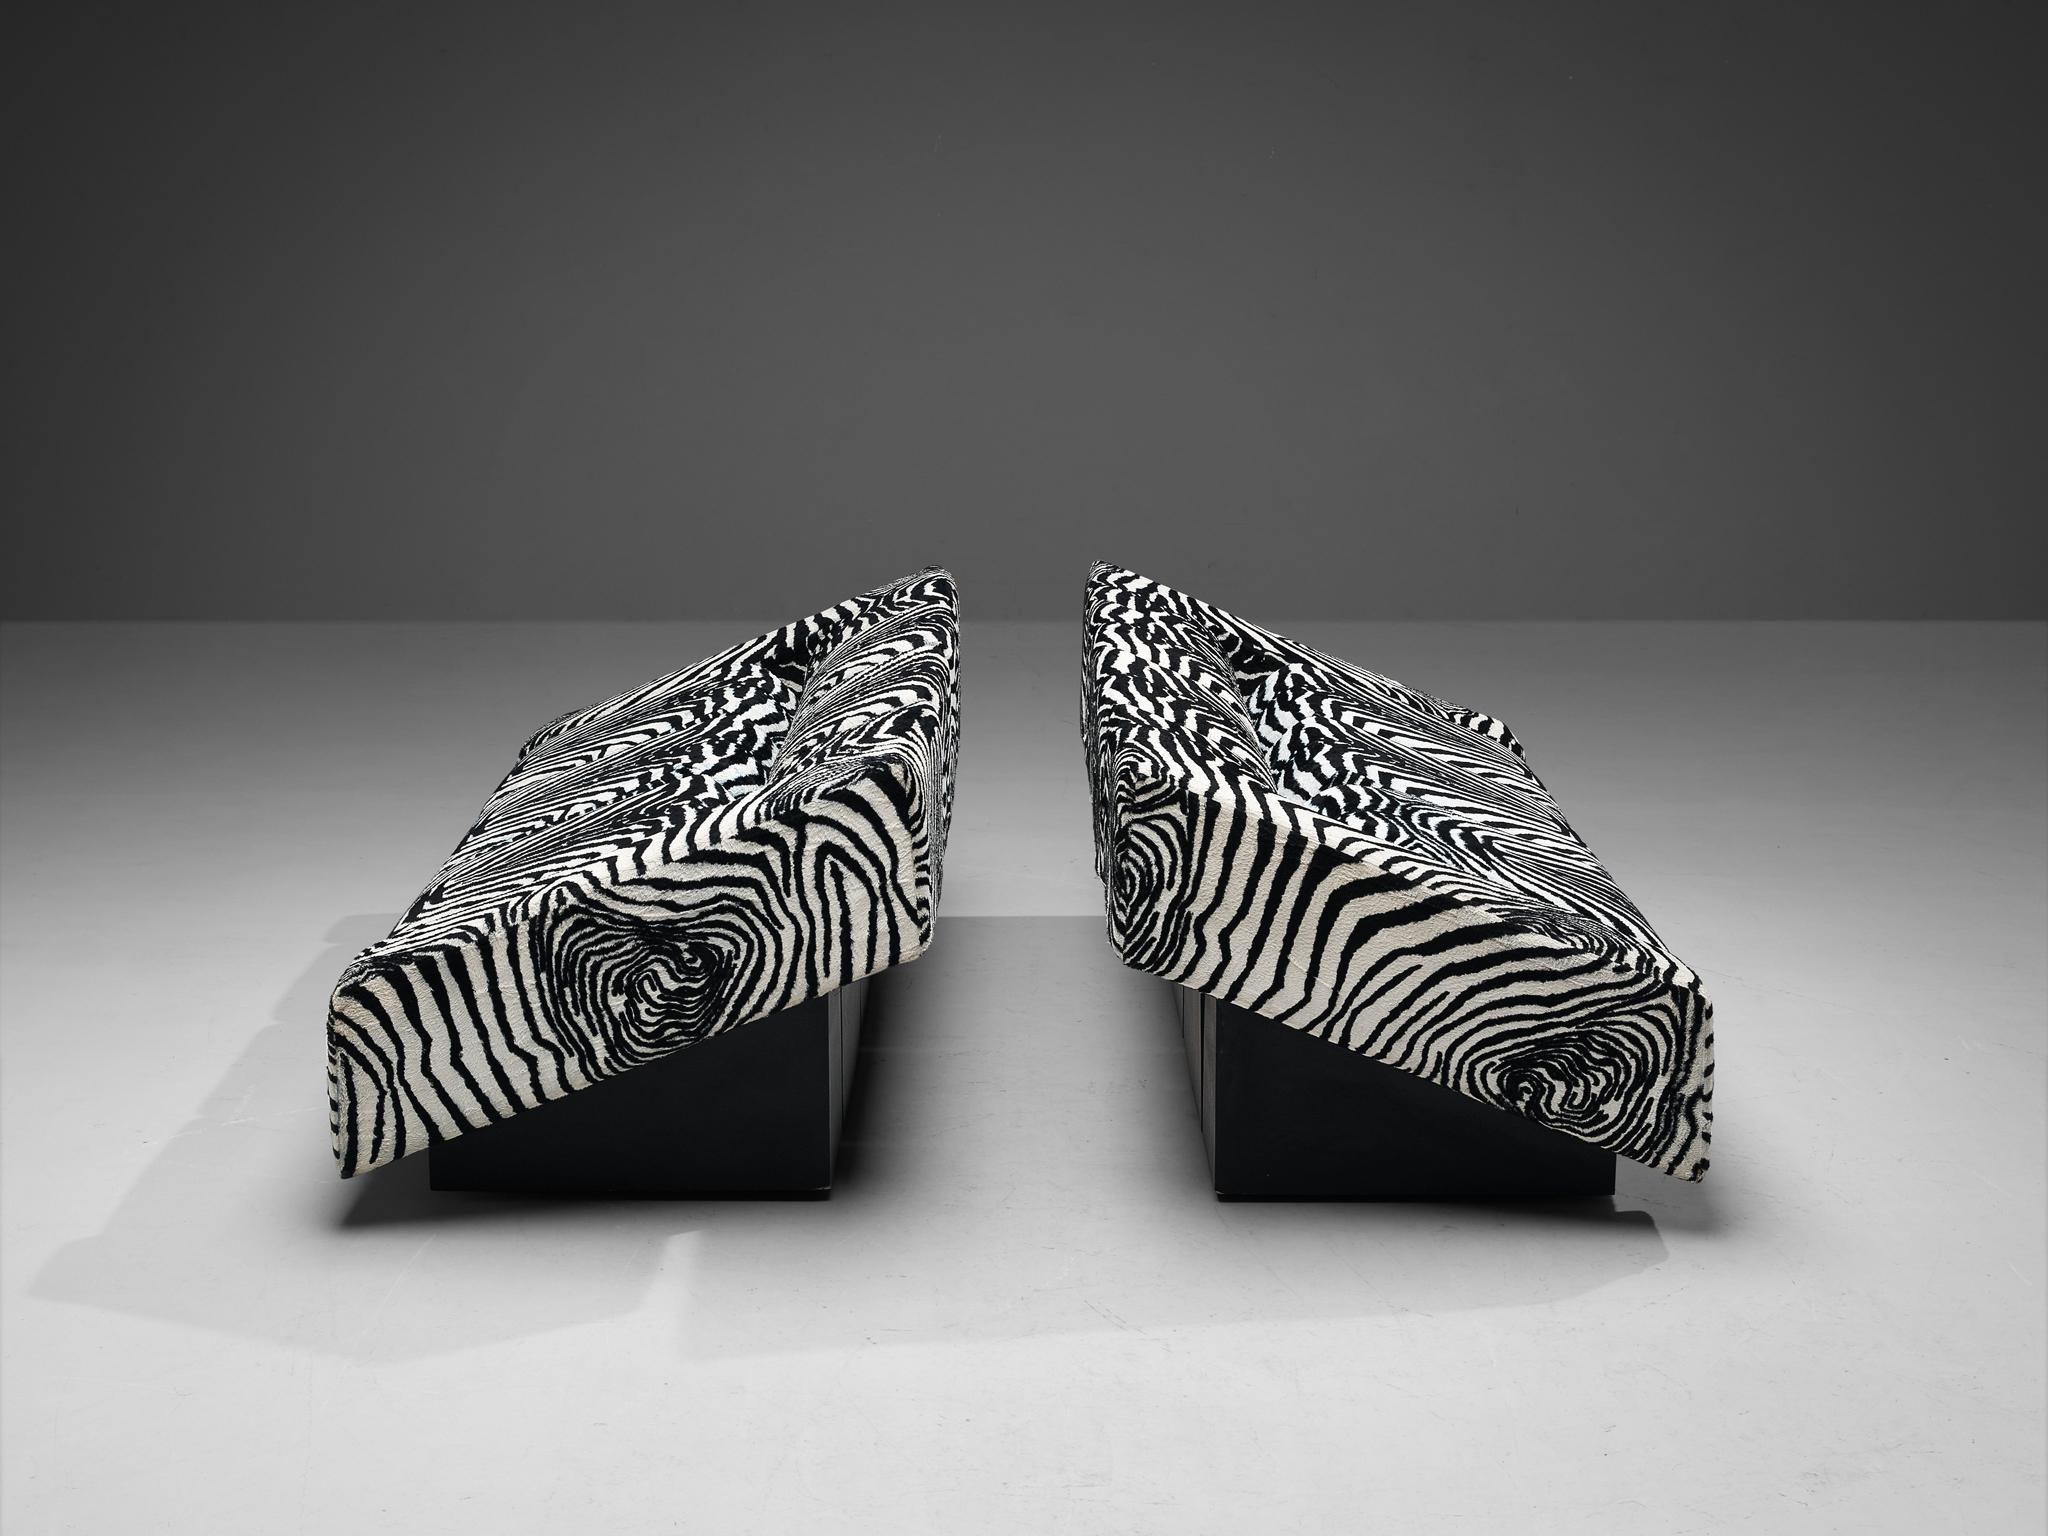 Post-Modern Mario Botta for Alias Pair of 'Obliqua' Sofas in Zebra Print Upholstery  For Sale